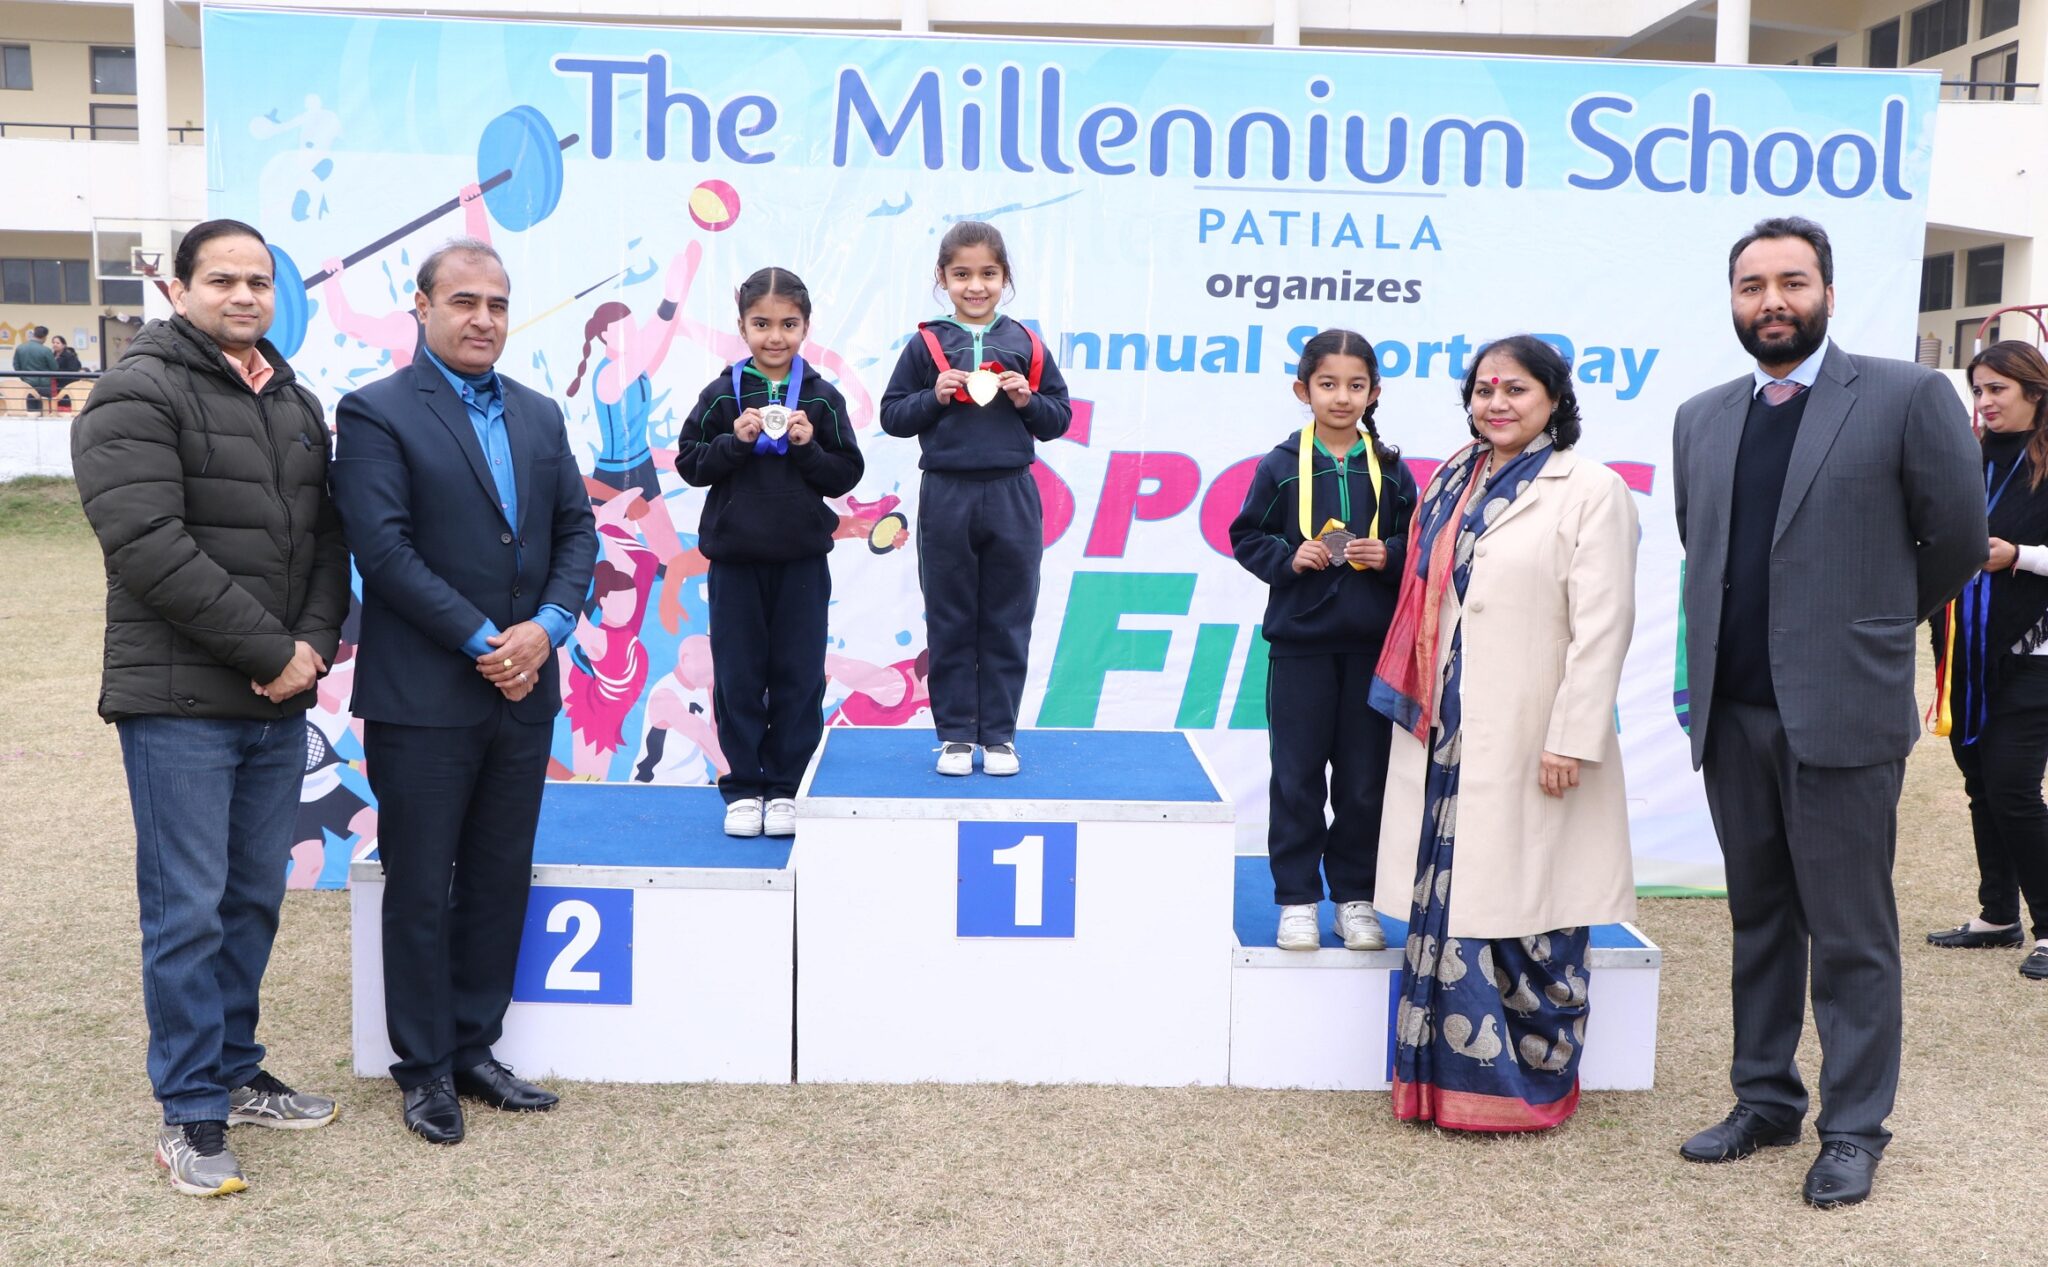 Millennium school Patiala organized Annual Sports Day